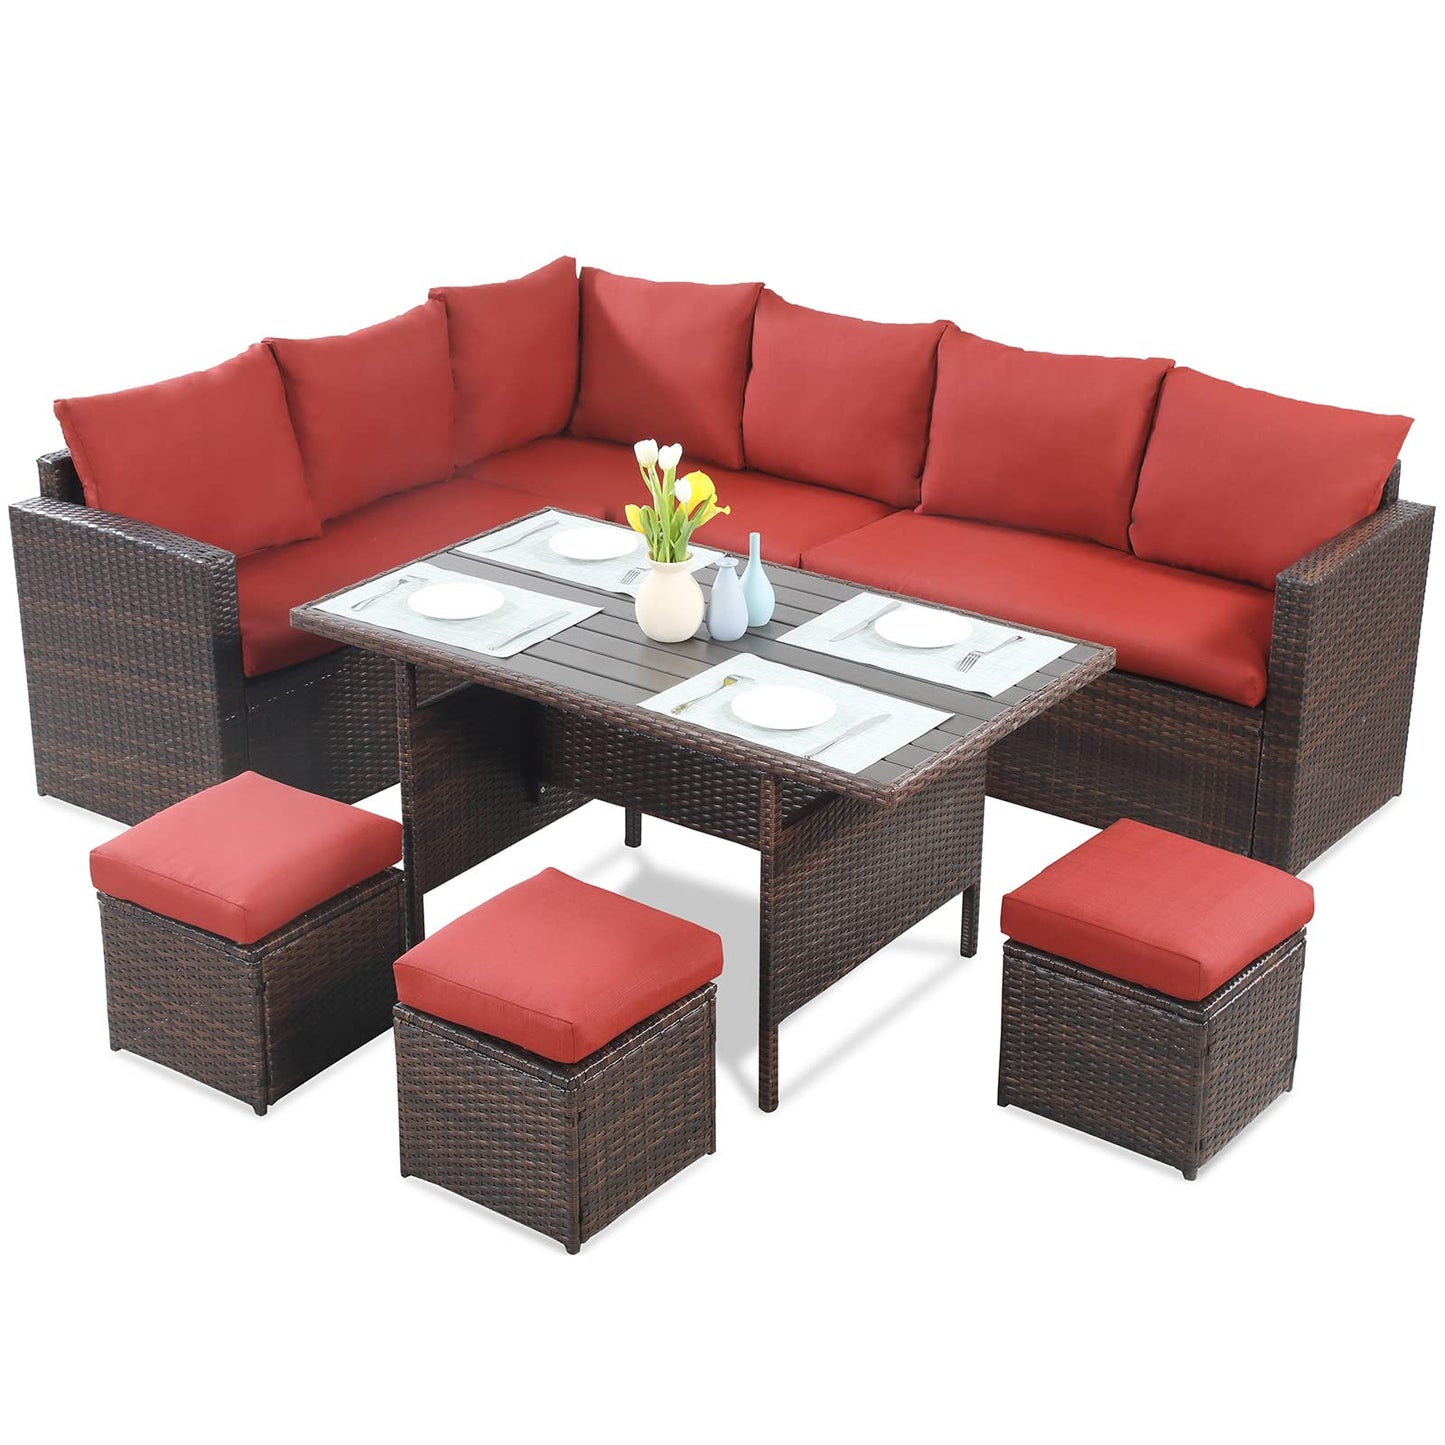 Wisteria Lane Juego de muebles de patio, sofá seccional de comedor al aire libre de 7 piezas con mesa de comedor y silla, juego de conversación de mimbre para todo tipo de clima con otomana, color rojo